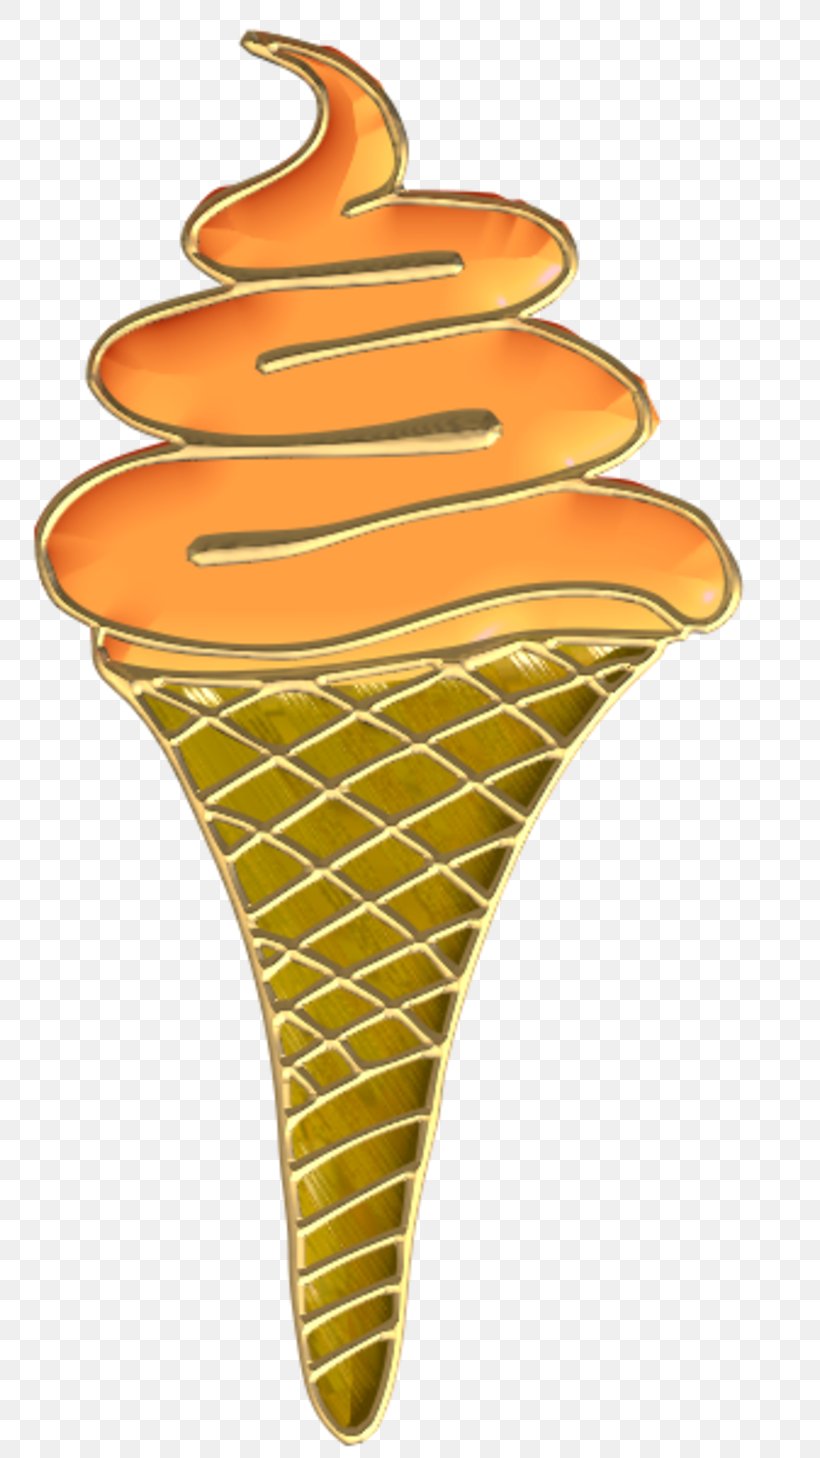 Ice Cream Cones Image Clip Art, PNG, 800x1458px, Ice Cream, Cone, Cream, Dairy, Dessert Download Free